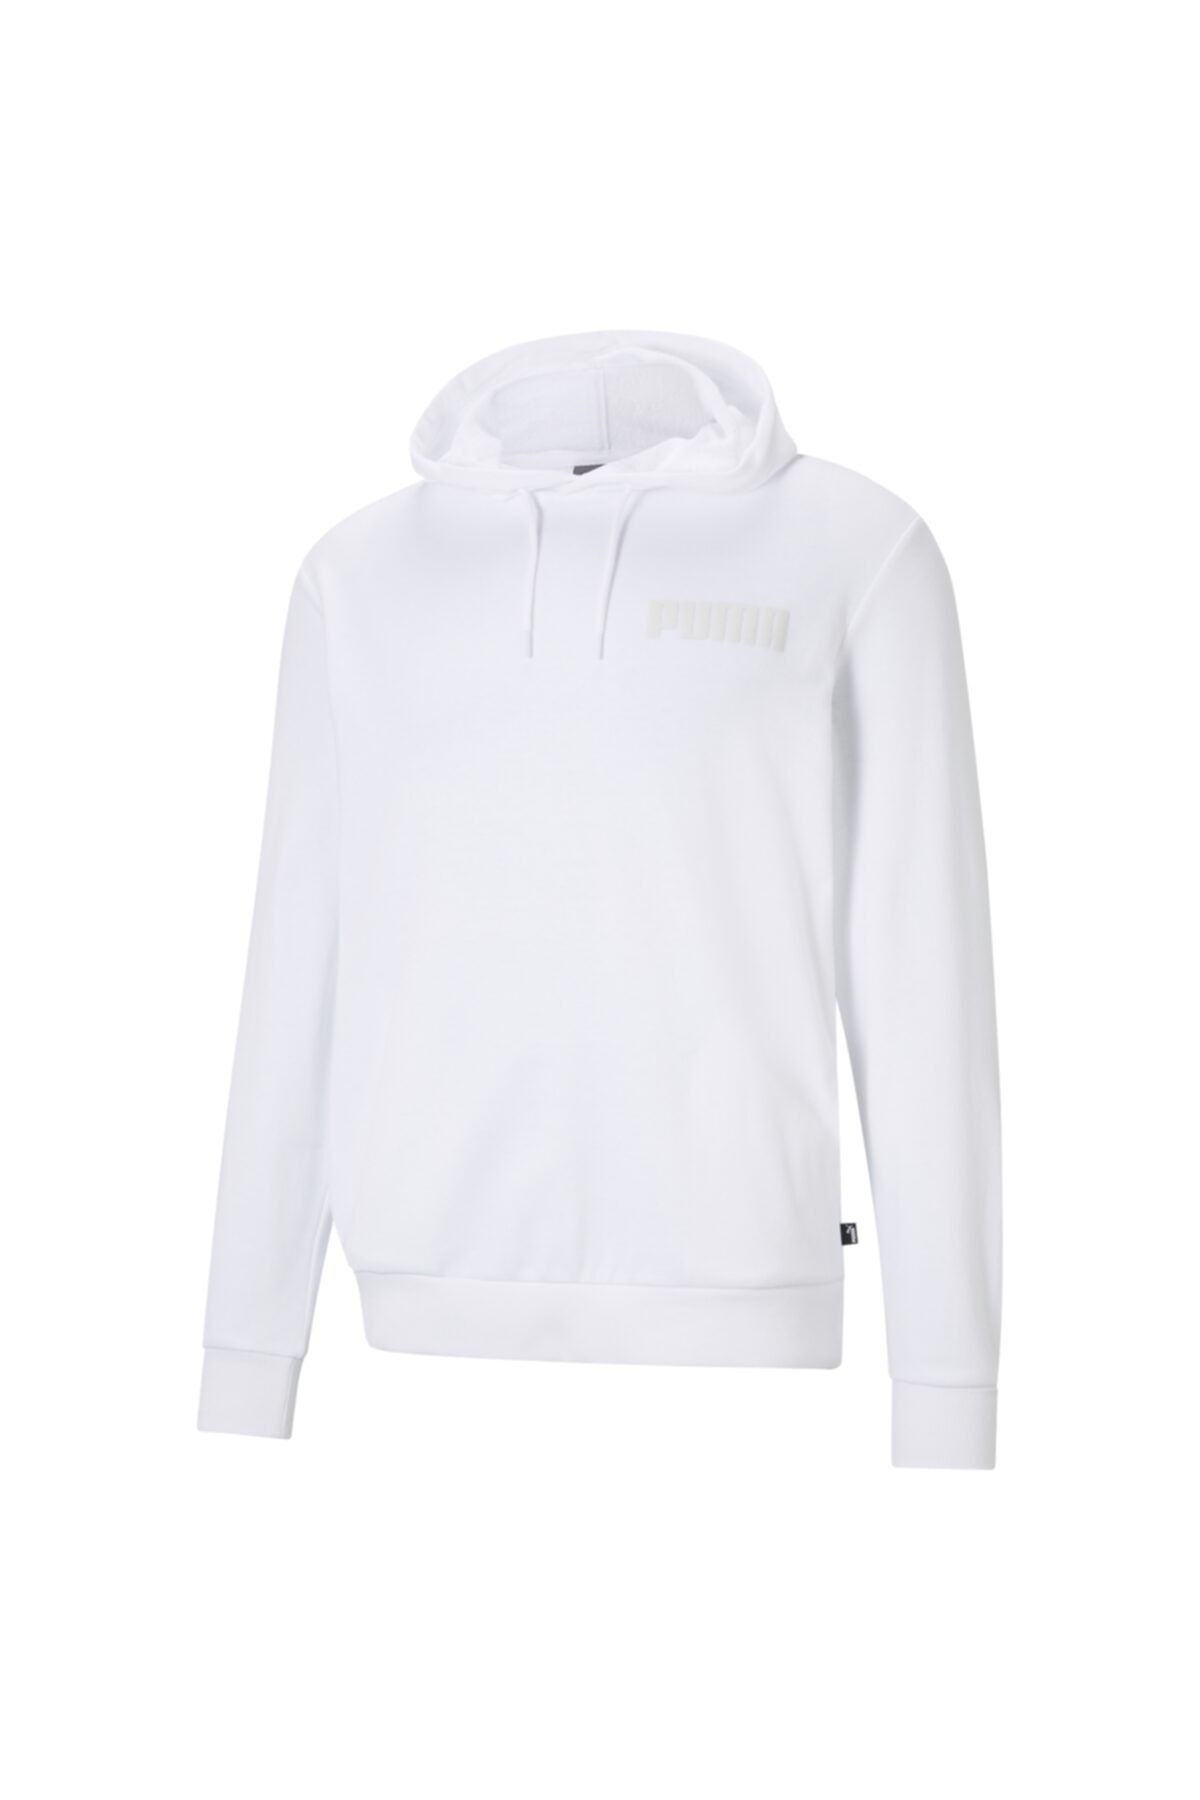 Puma Erkek Modern Basıcs Sweatshirtı-beyaz